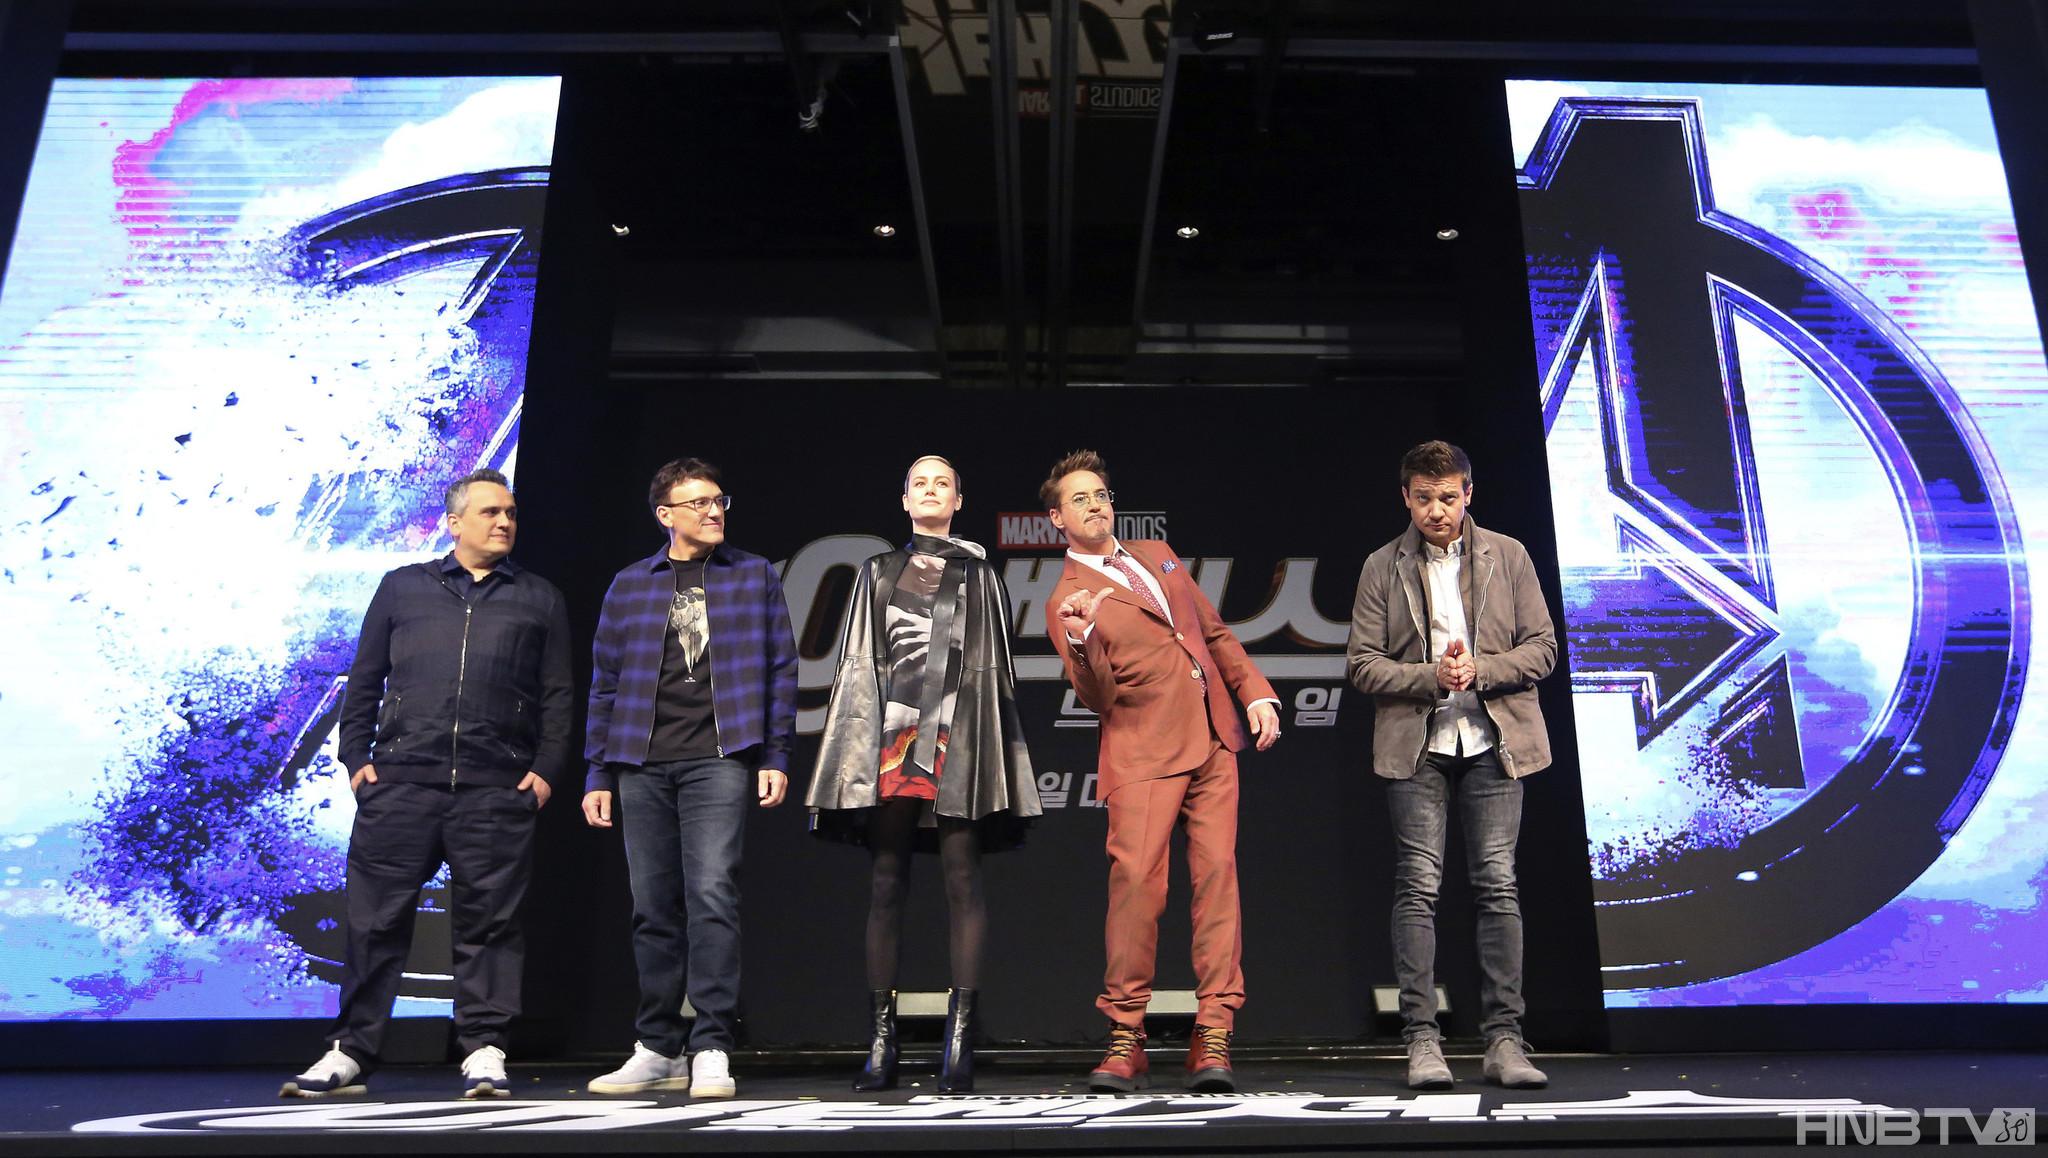 布丽-拉尔森出席《复仇者联盟4》韩国发布会 身披“战袍”斗篷帅气亮相